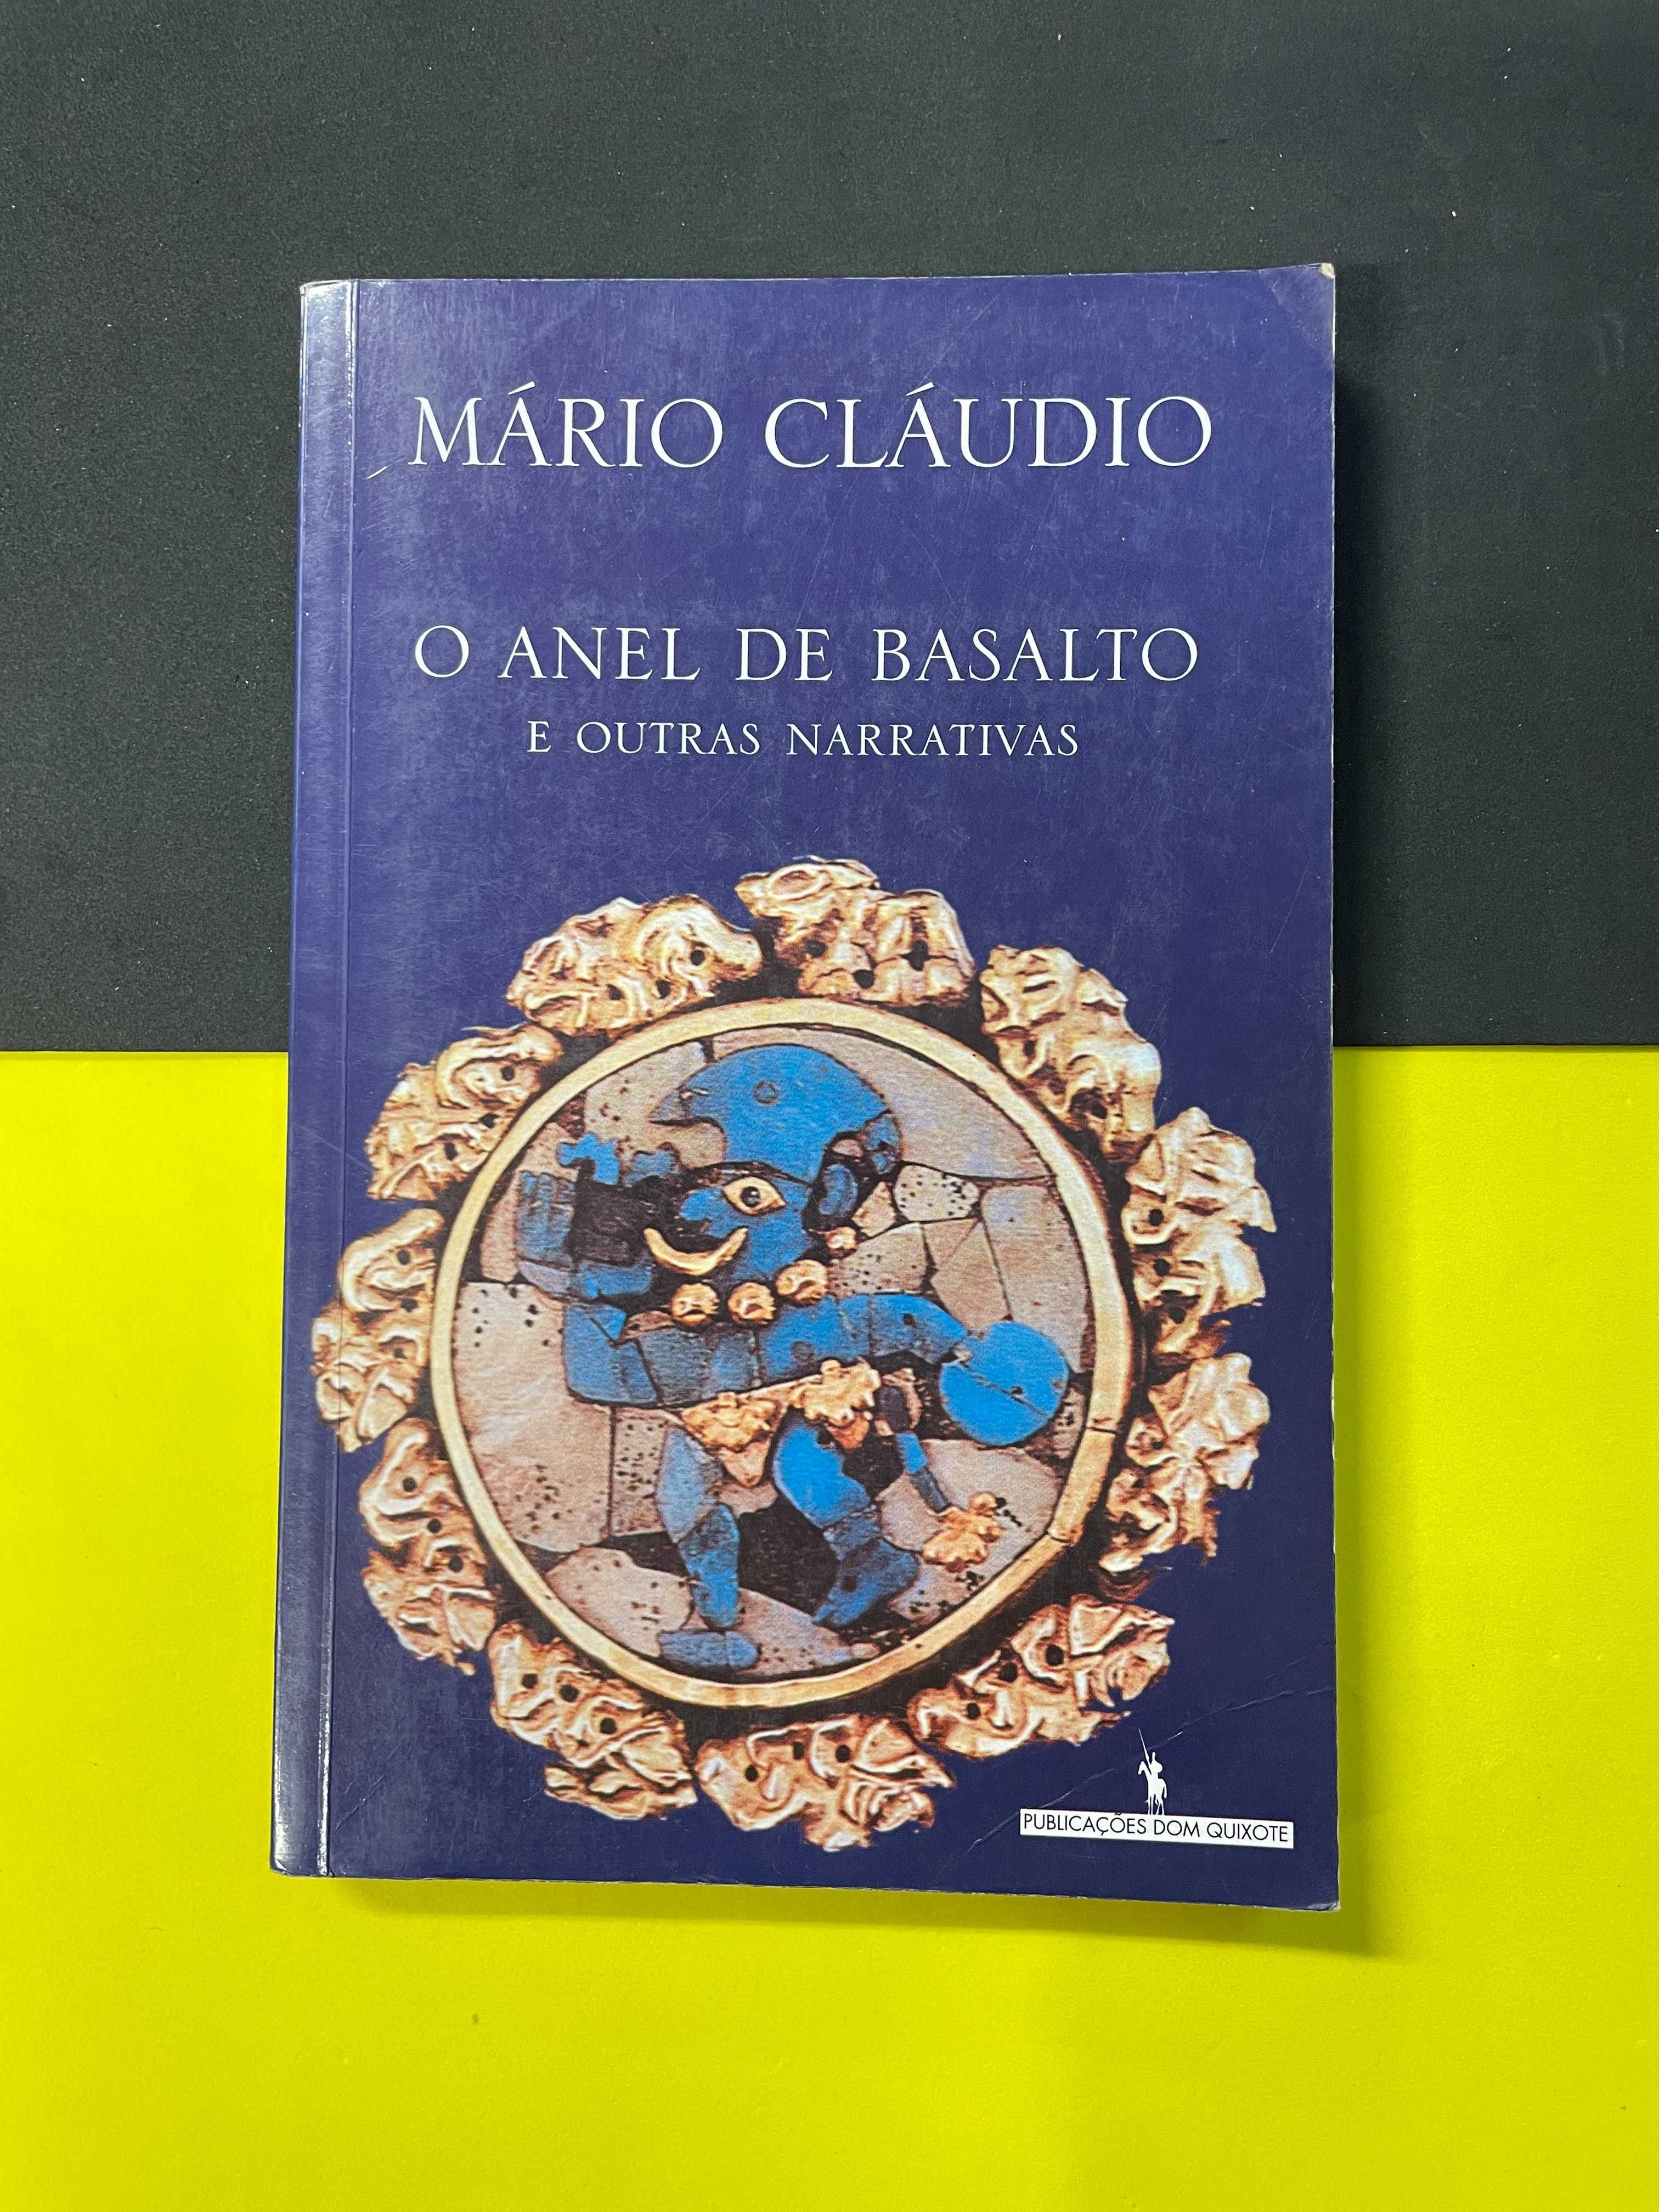 Mário Claudio - O Anel de Basalto e outras narrativas